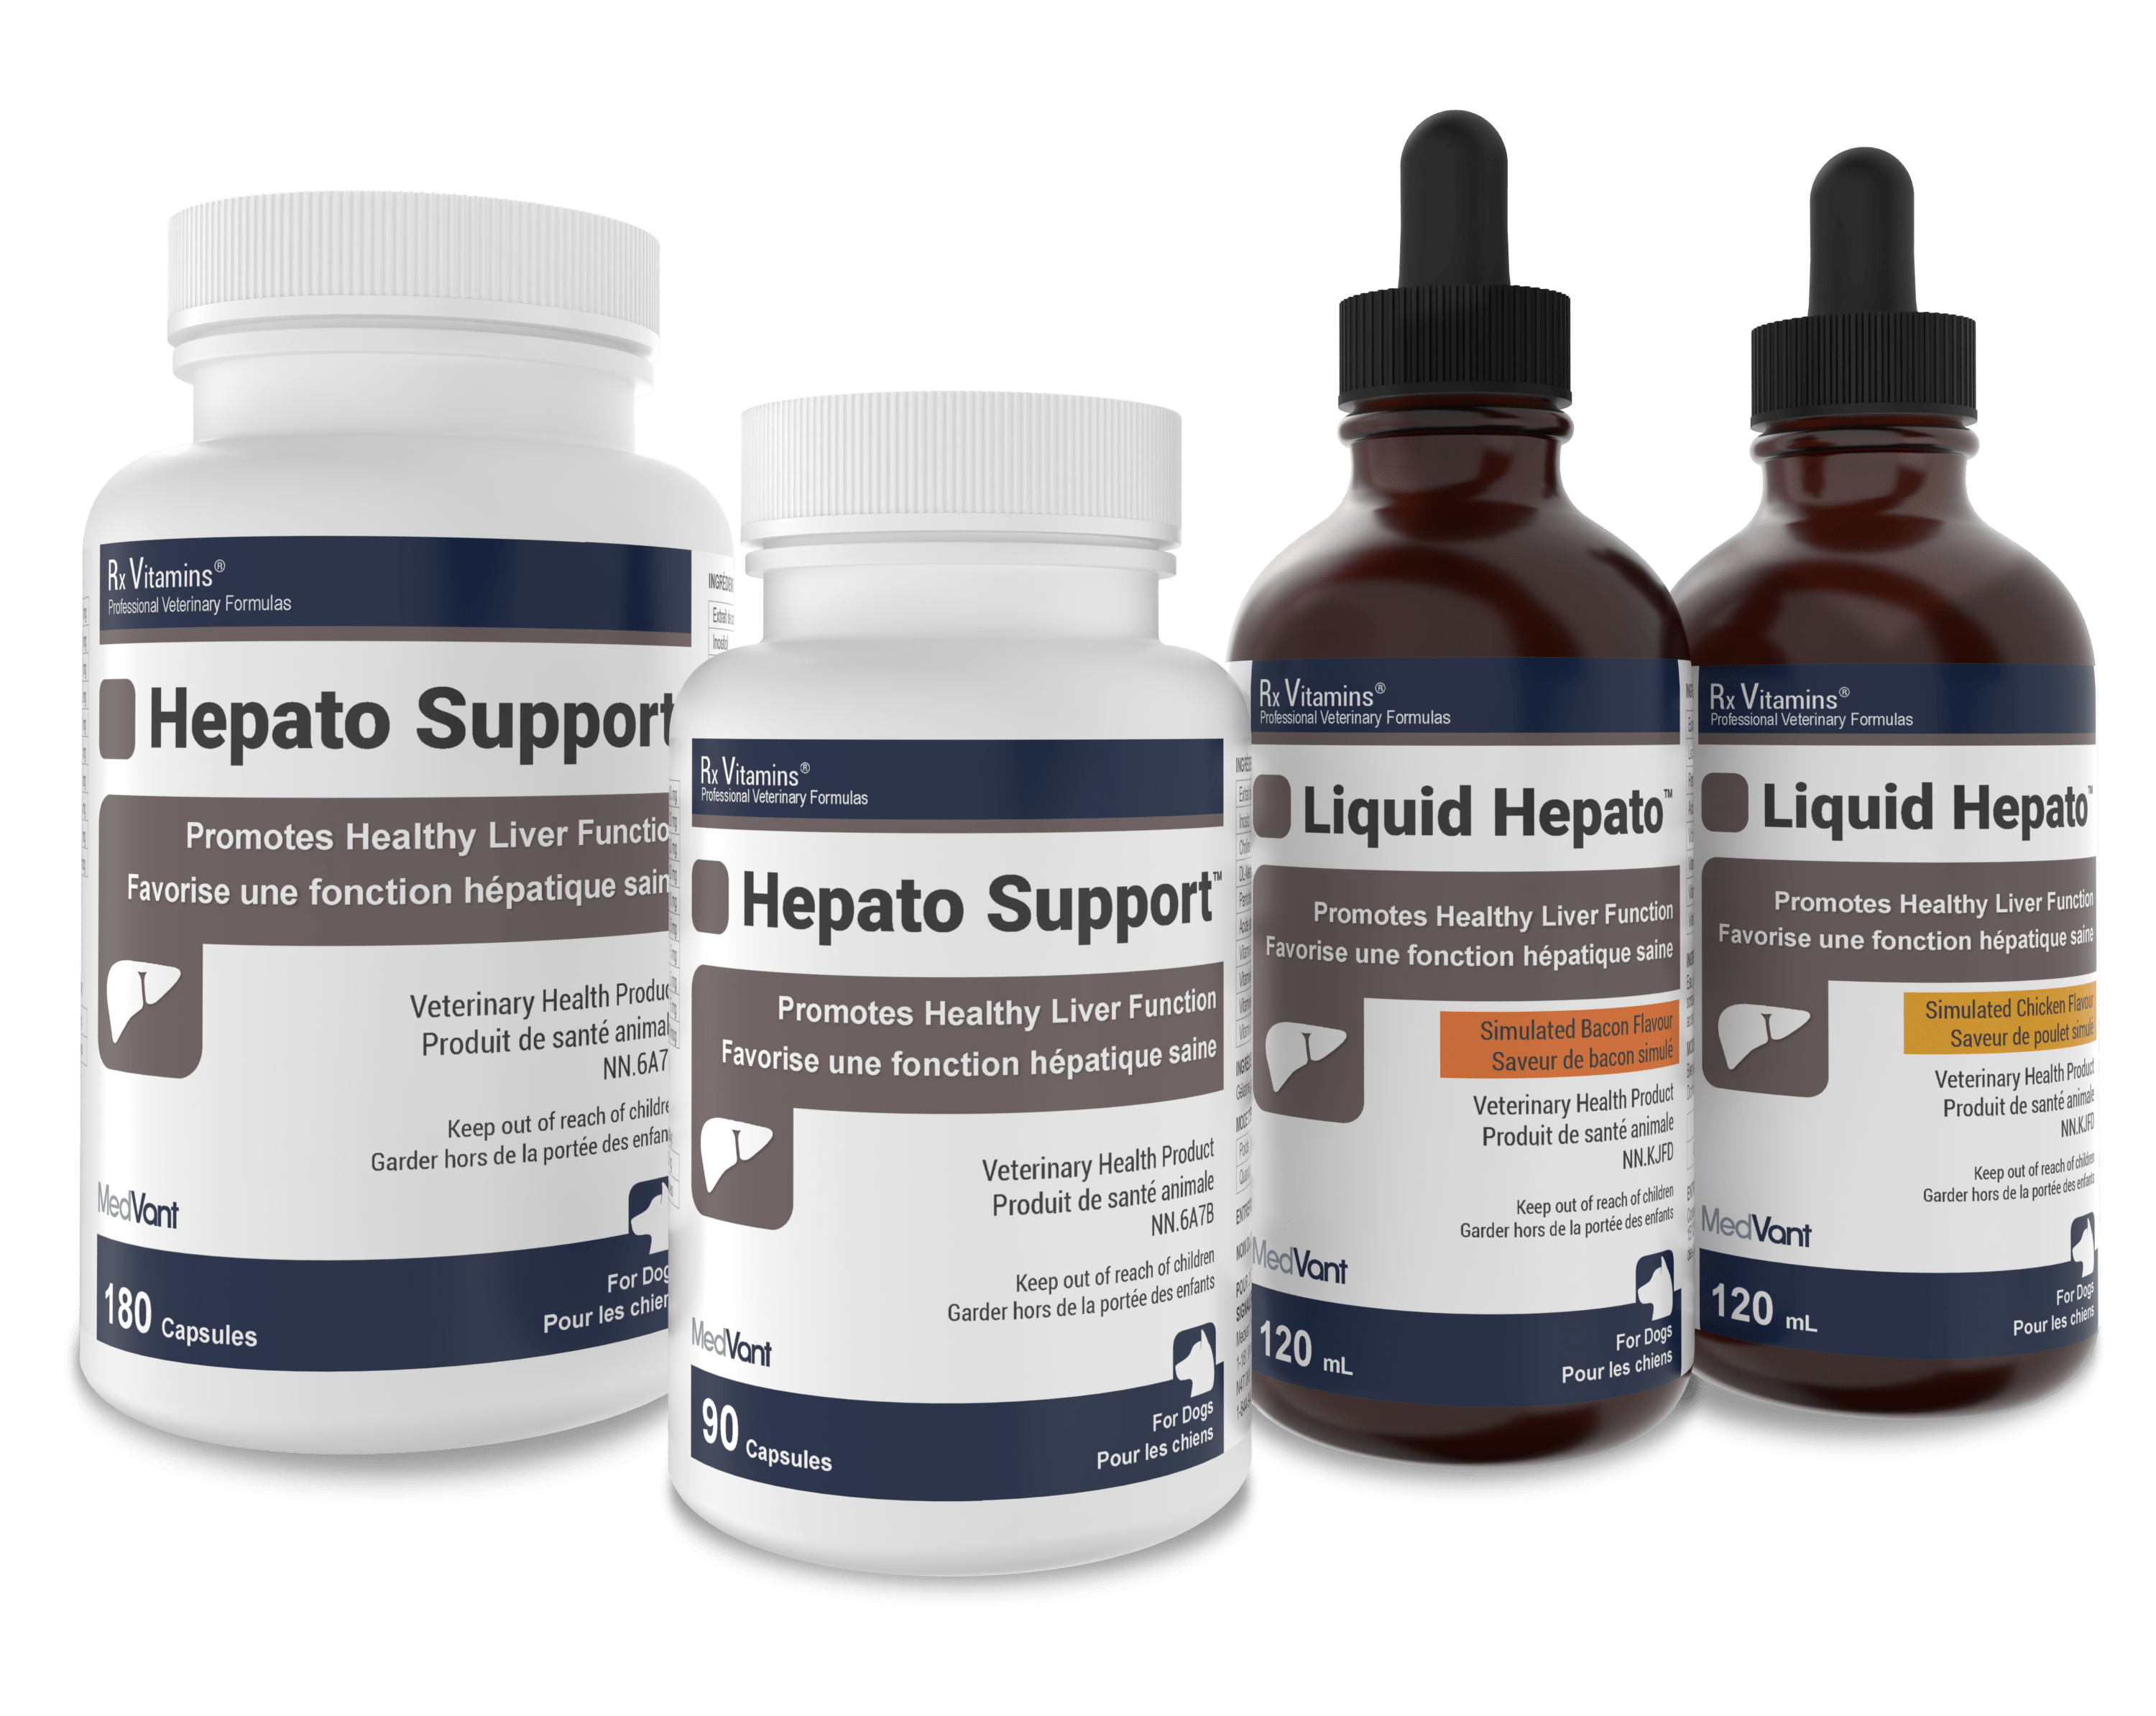 Hepato Support™